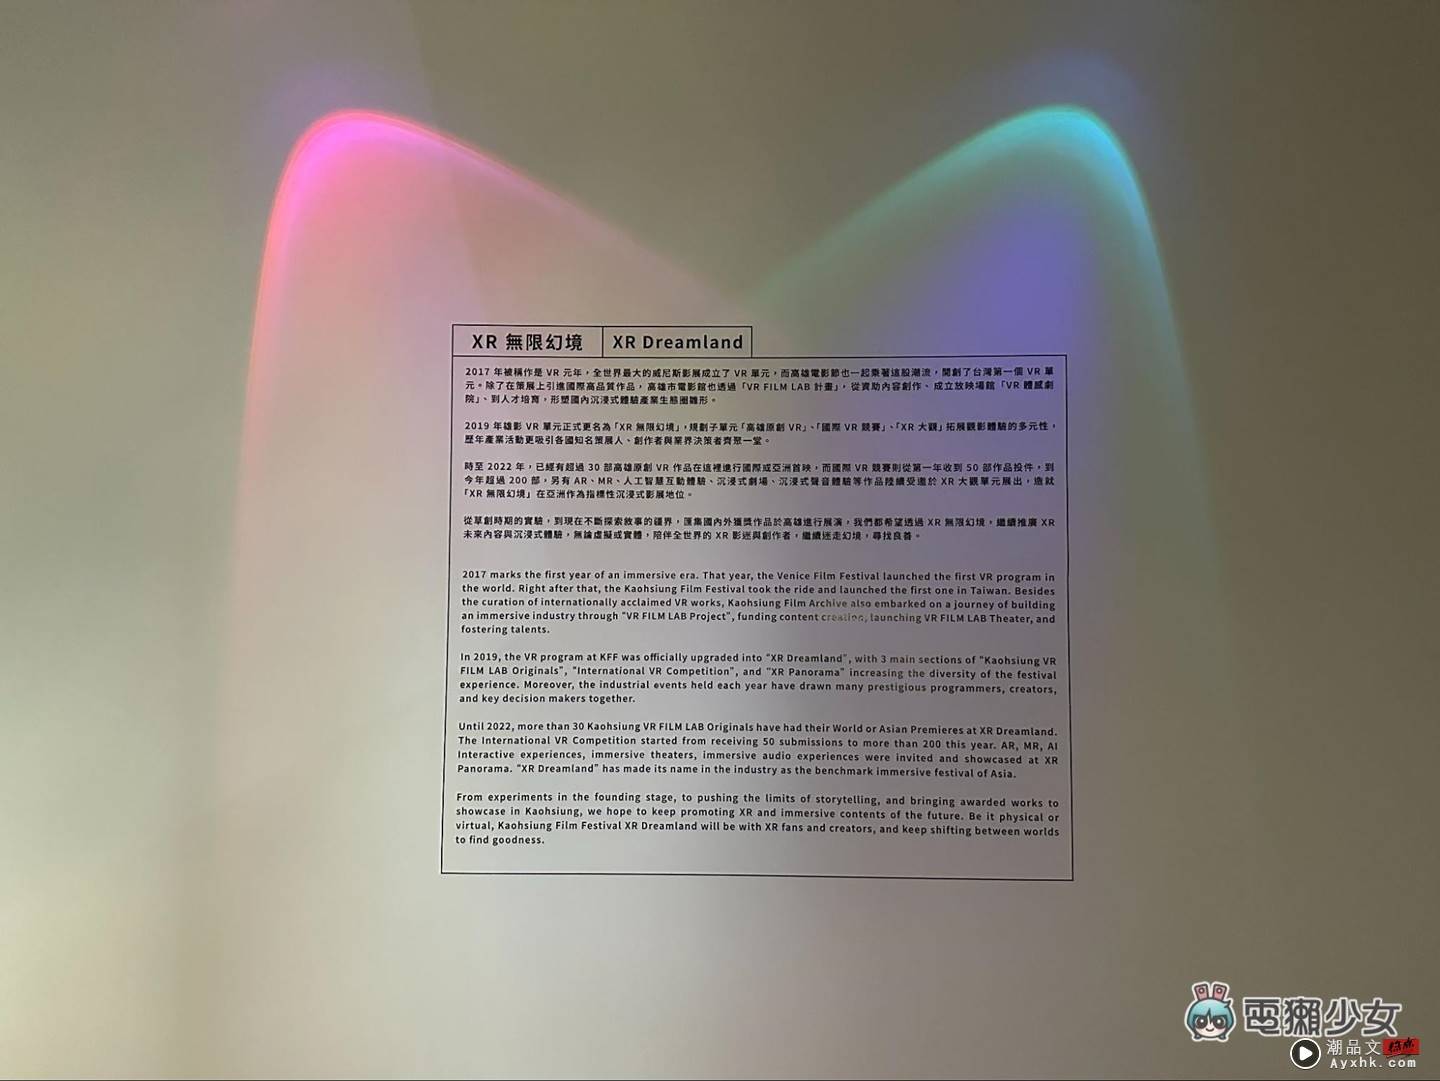 出门｜XR 的展览应用，能和场地互动的高雄电影节‘ XR 无限幻境 ’ 数码科技 图2张